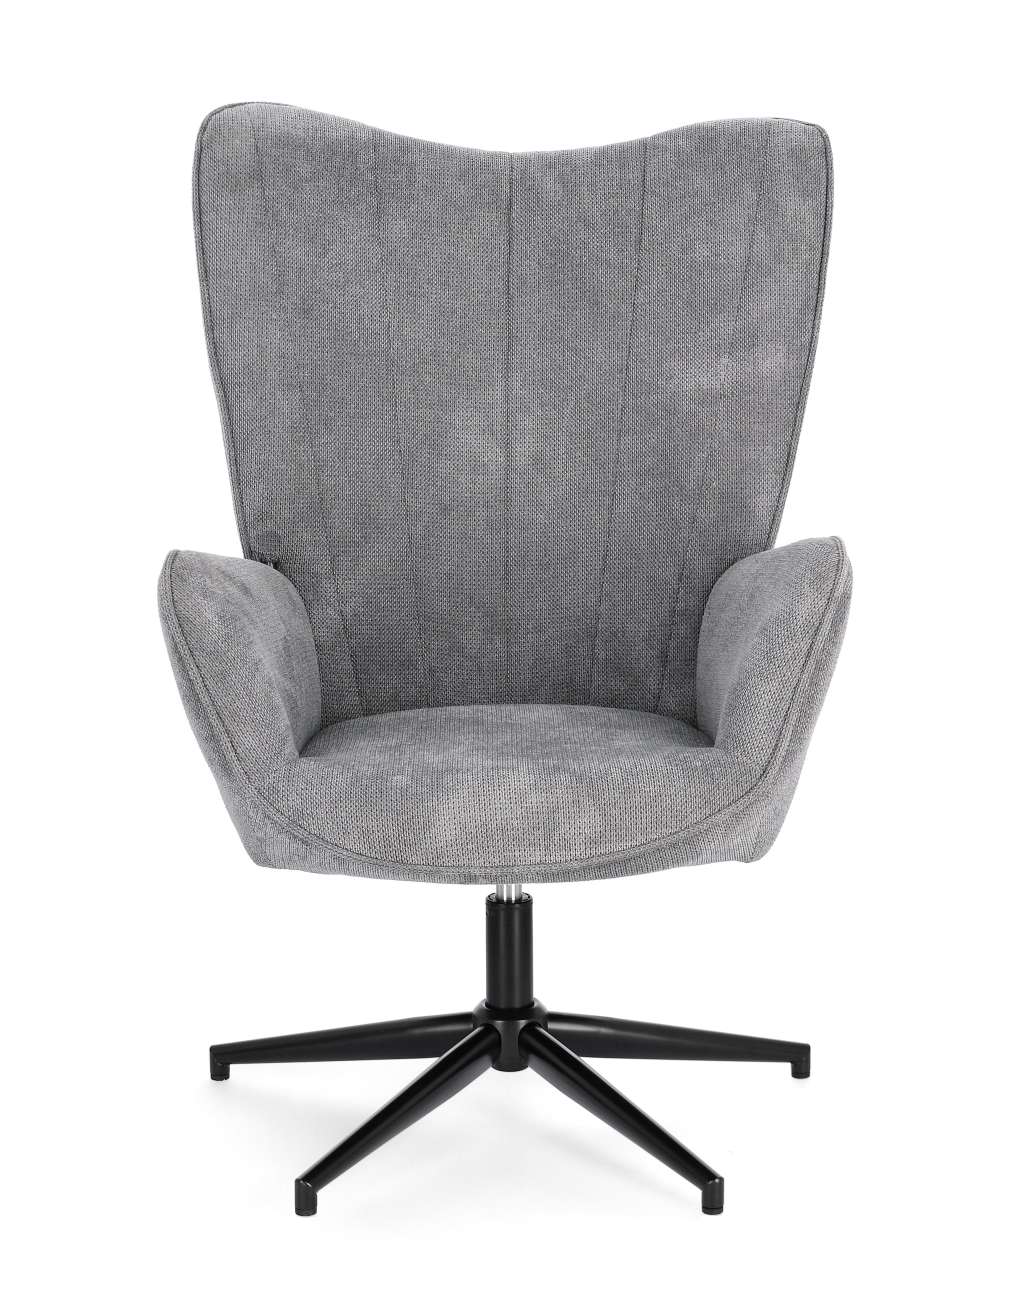 Der Drehsessel Inas überzeugt mit seinem modernen Stil. Gefertigt wurde er aus Stoff, welcher einen grauen Farbton besitzt. Das Gestell ist aus Metall und hat eine schwarze Farbe. Der Sessel besitzt eine Sitzhöhe von 50 cm.